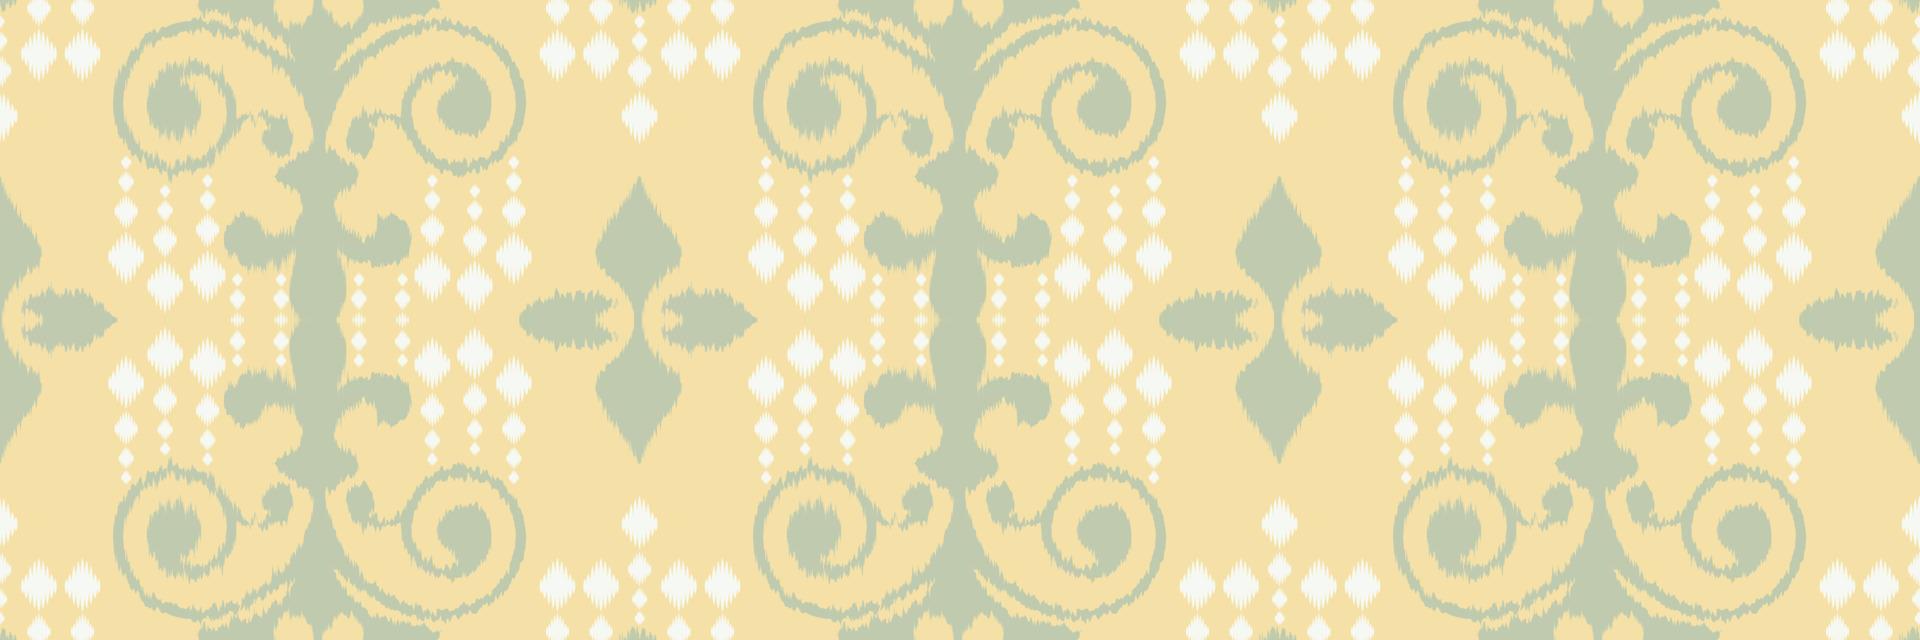 ikat flor batik têxtil padrão sem costura design de vetor digital para impressão saree kurti borneo tecido borda escova símbolos amostras roupas de festa